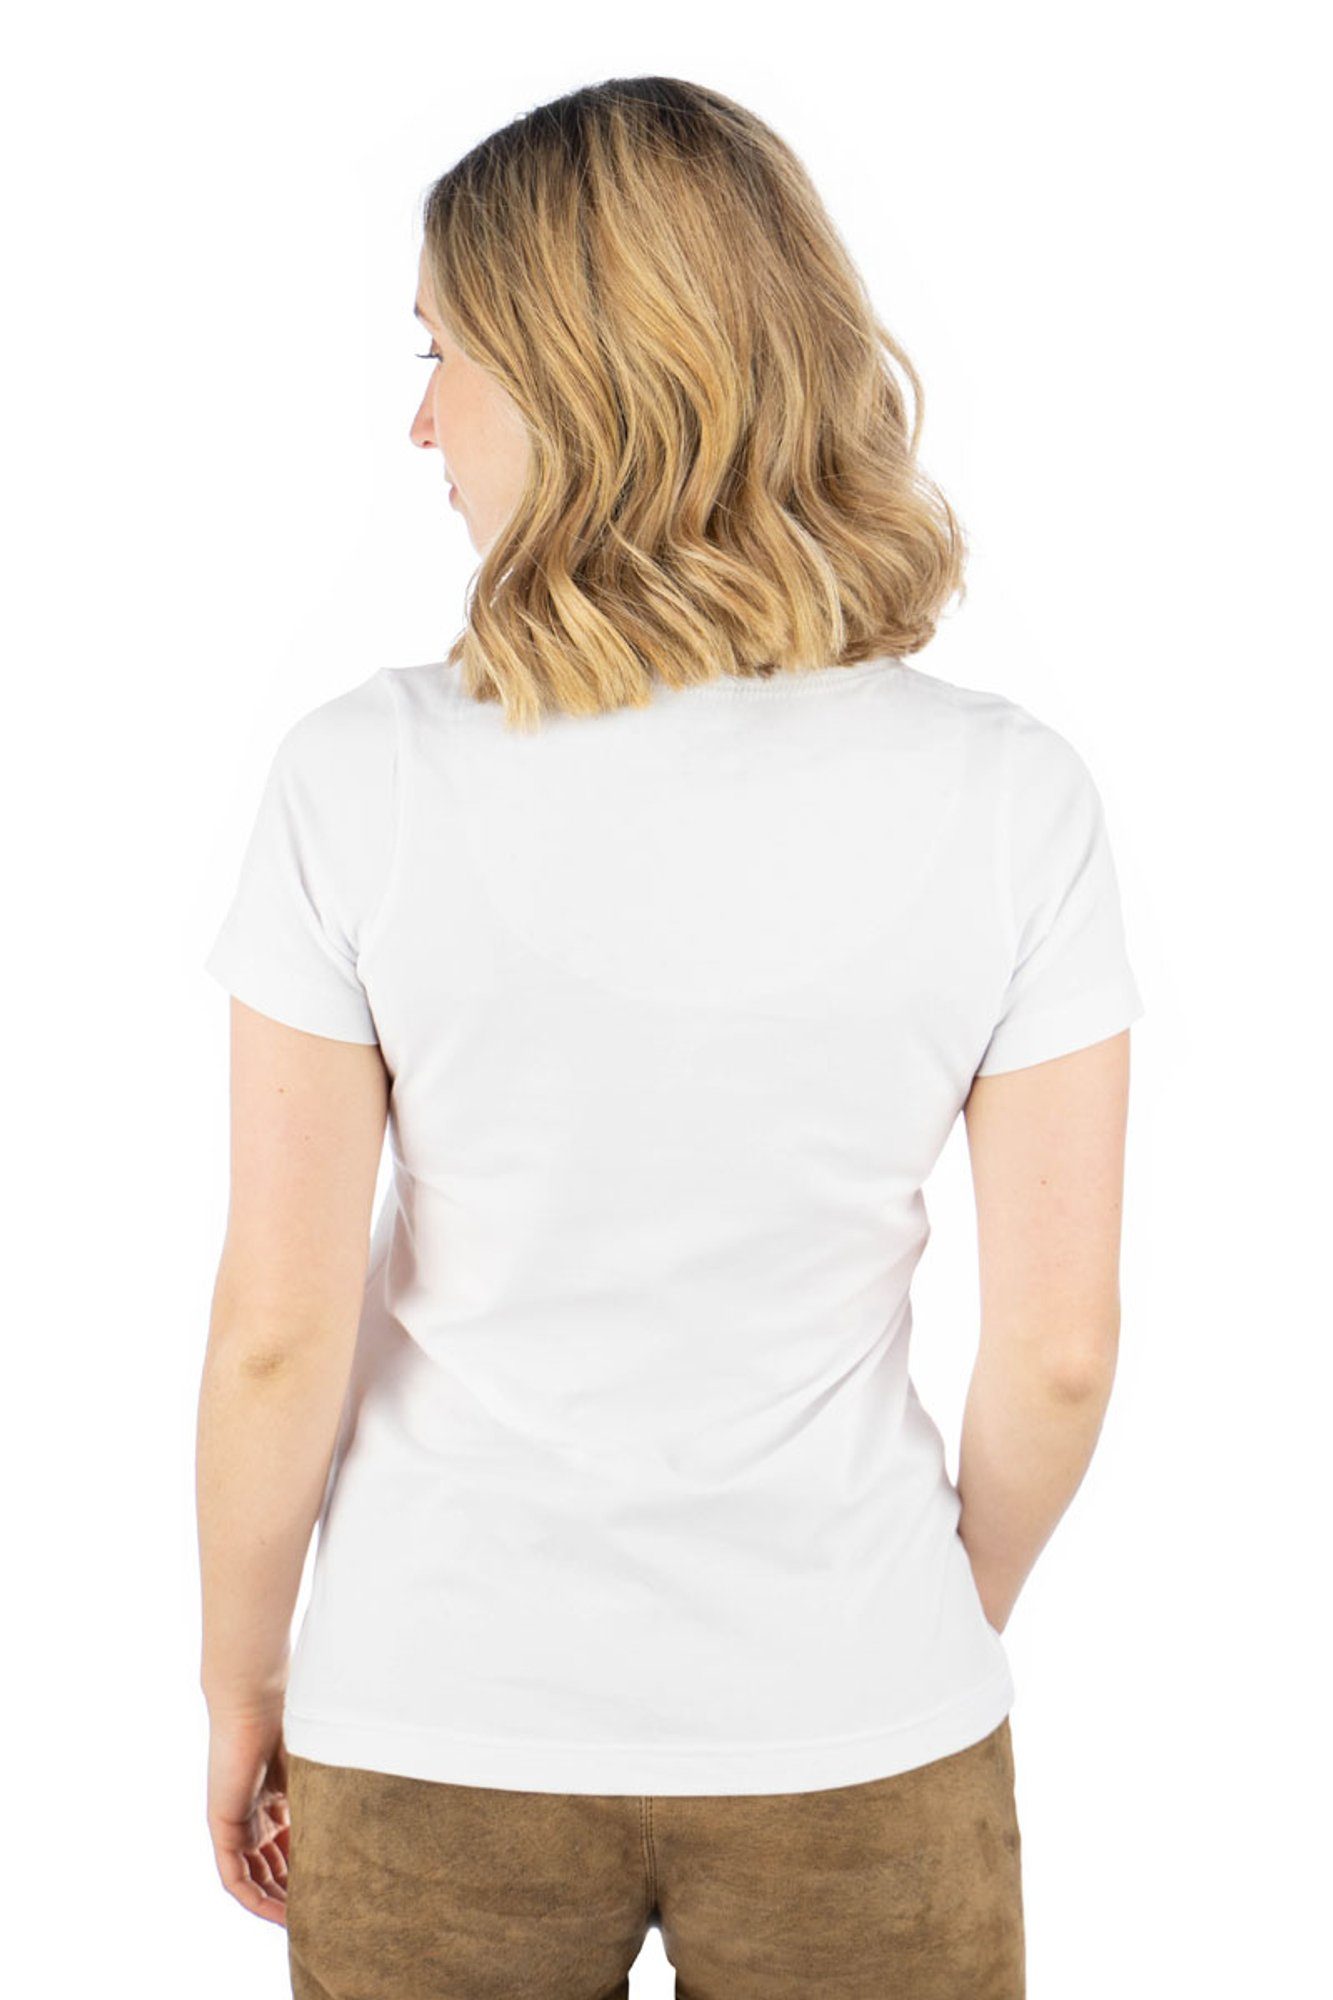 OS-Trachten Trachtenshirt weiß auf Uginoy Strass-Hirsch mit T-Shirt Brust der Kurzarm